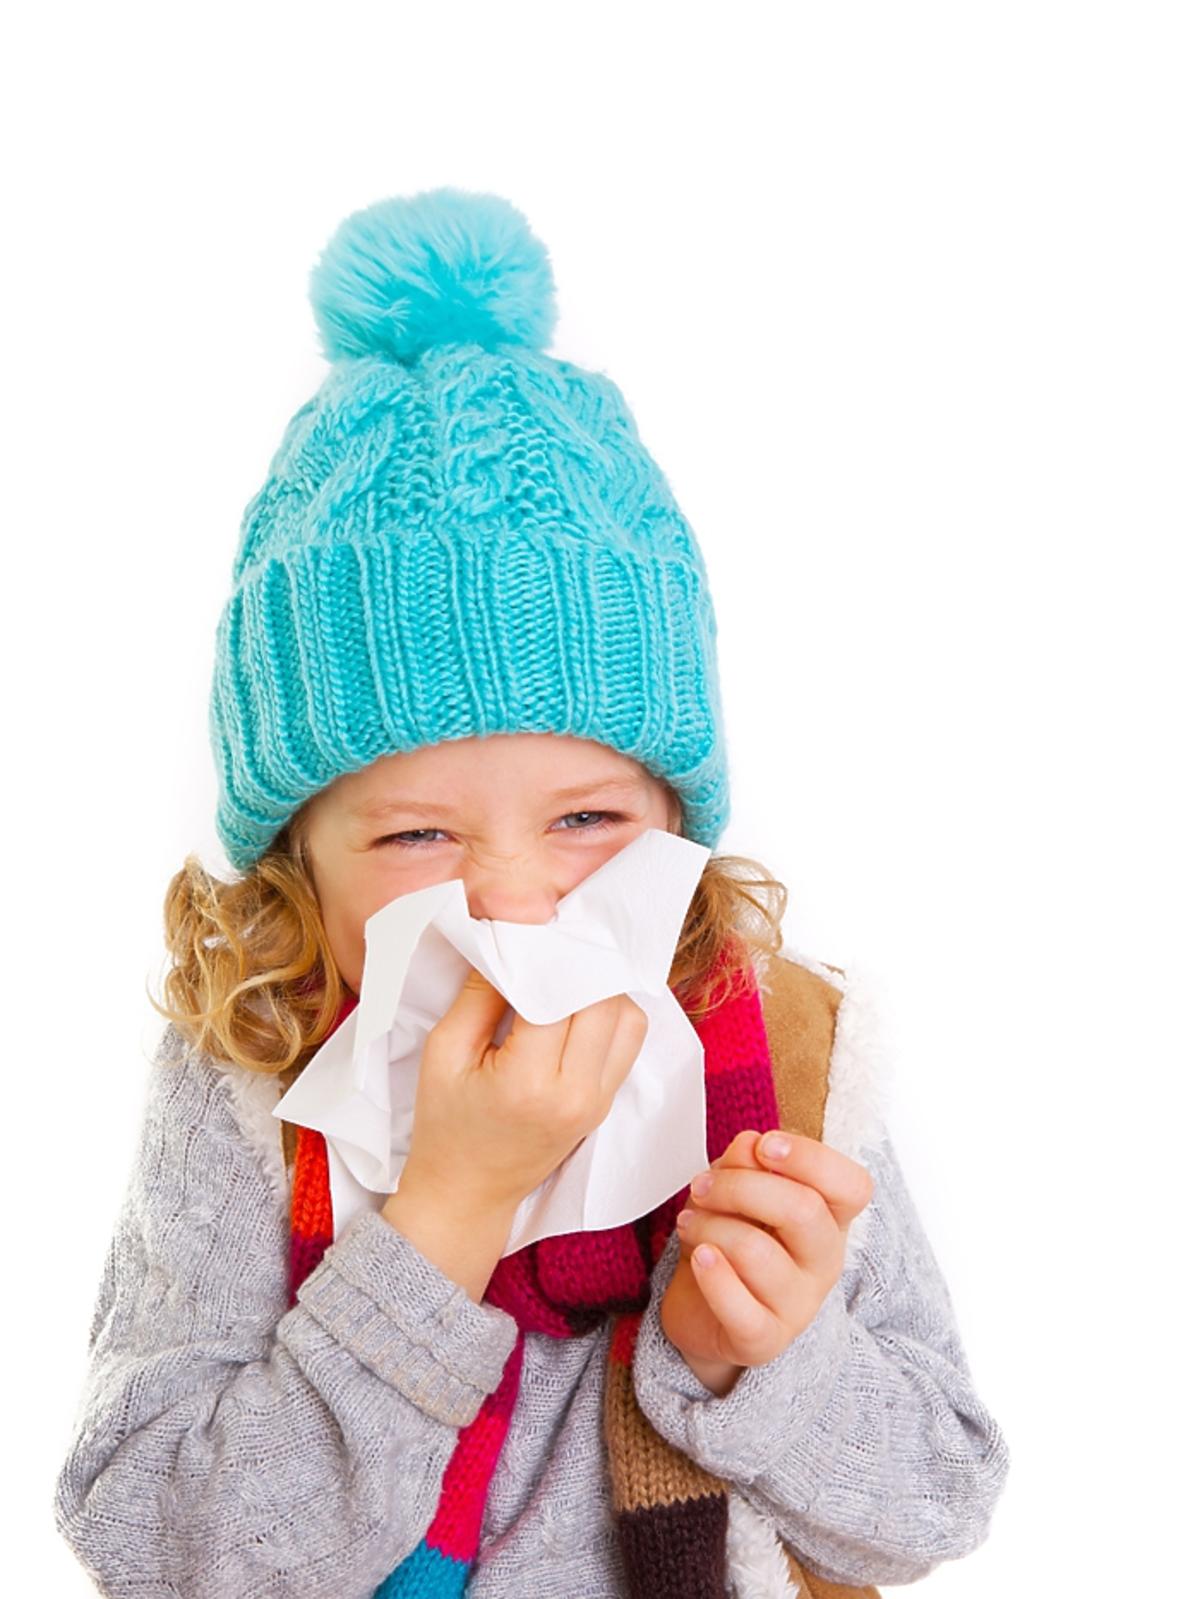 choroba, chore, zima, przeziębienie, dziecko, grypa, czapka